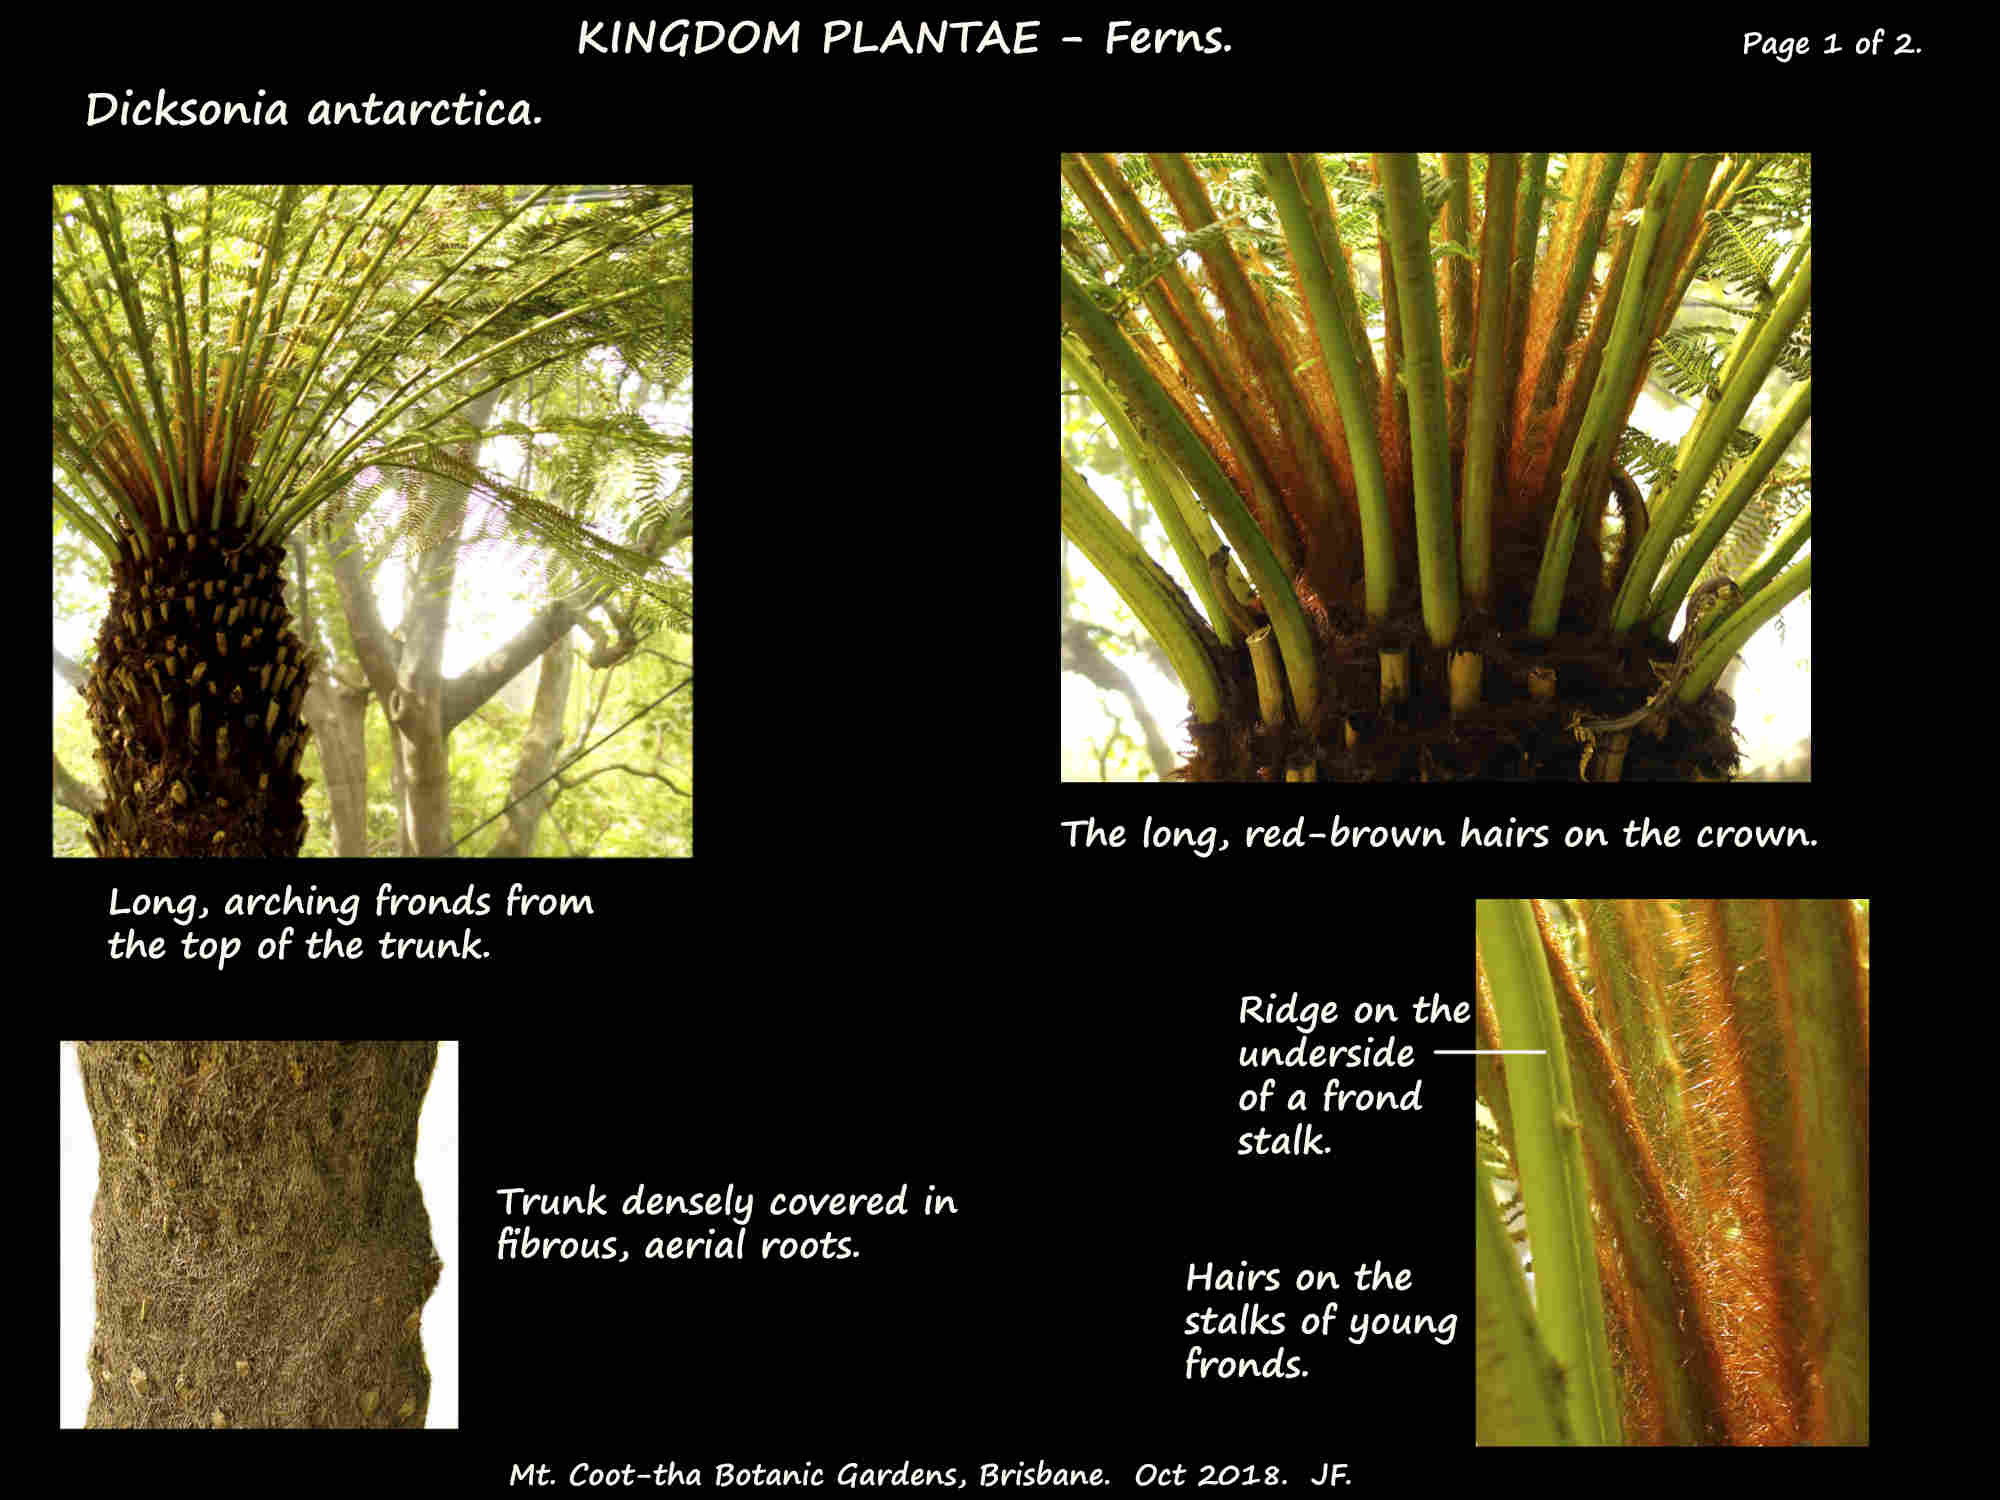 1 Soft Tree fern trunk & fronds